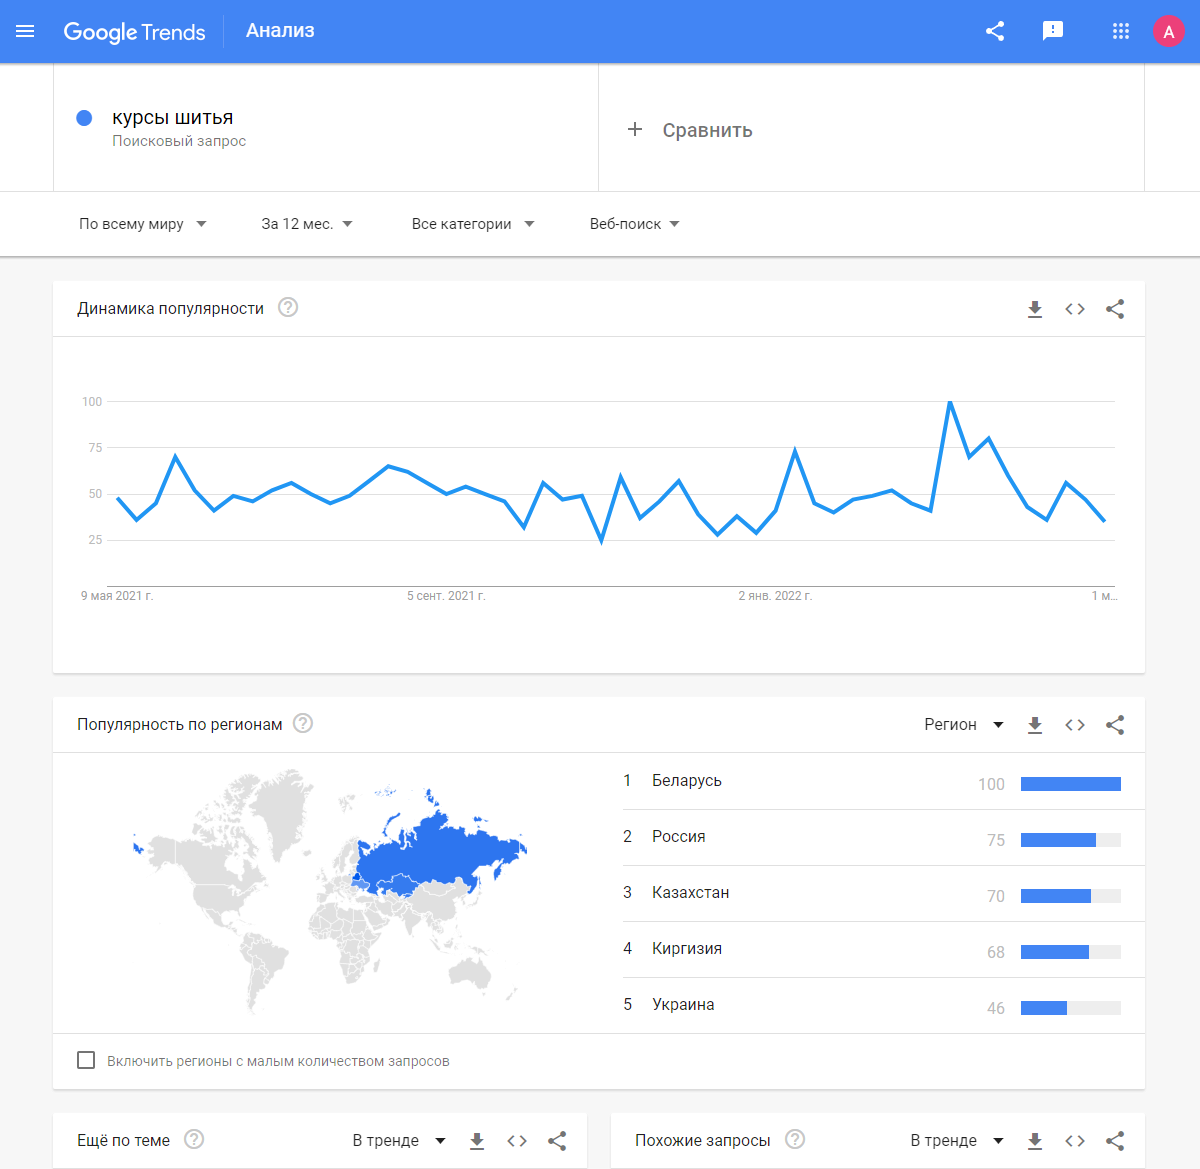 Частота запросов по теме обучения шитью в Google Trends